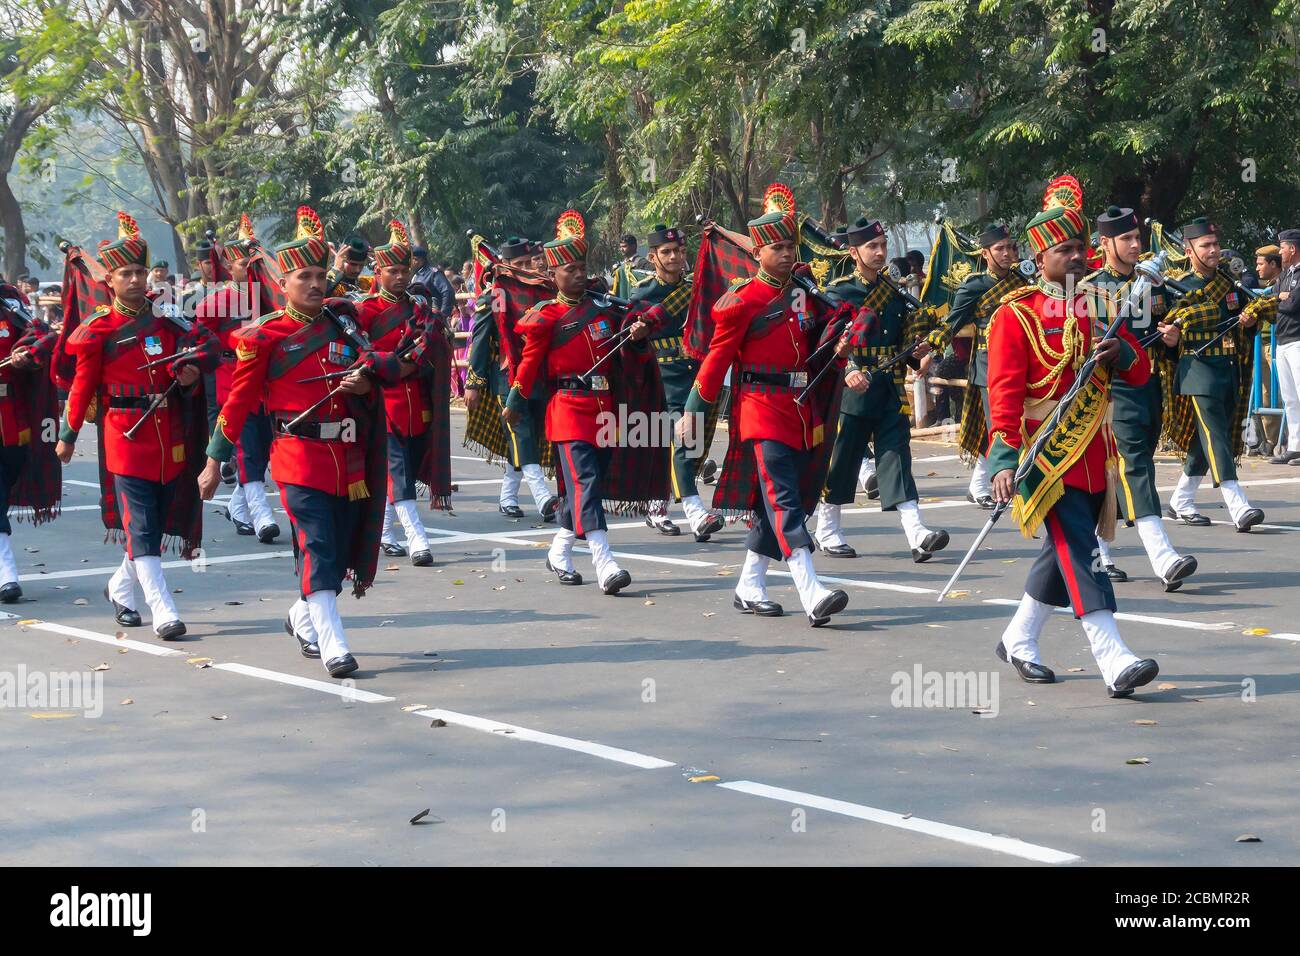 Kolkata, Bengala Occidental, India - 26 de enero de 2020 : oficiales del ejército indio vestidos como banda musical, llevando instrumentos musicales están marchando hacia el pasado. Foto de stock